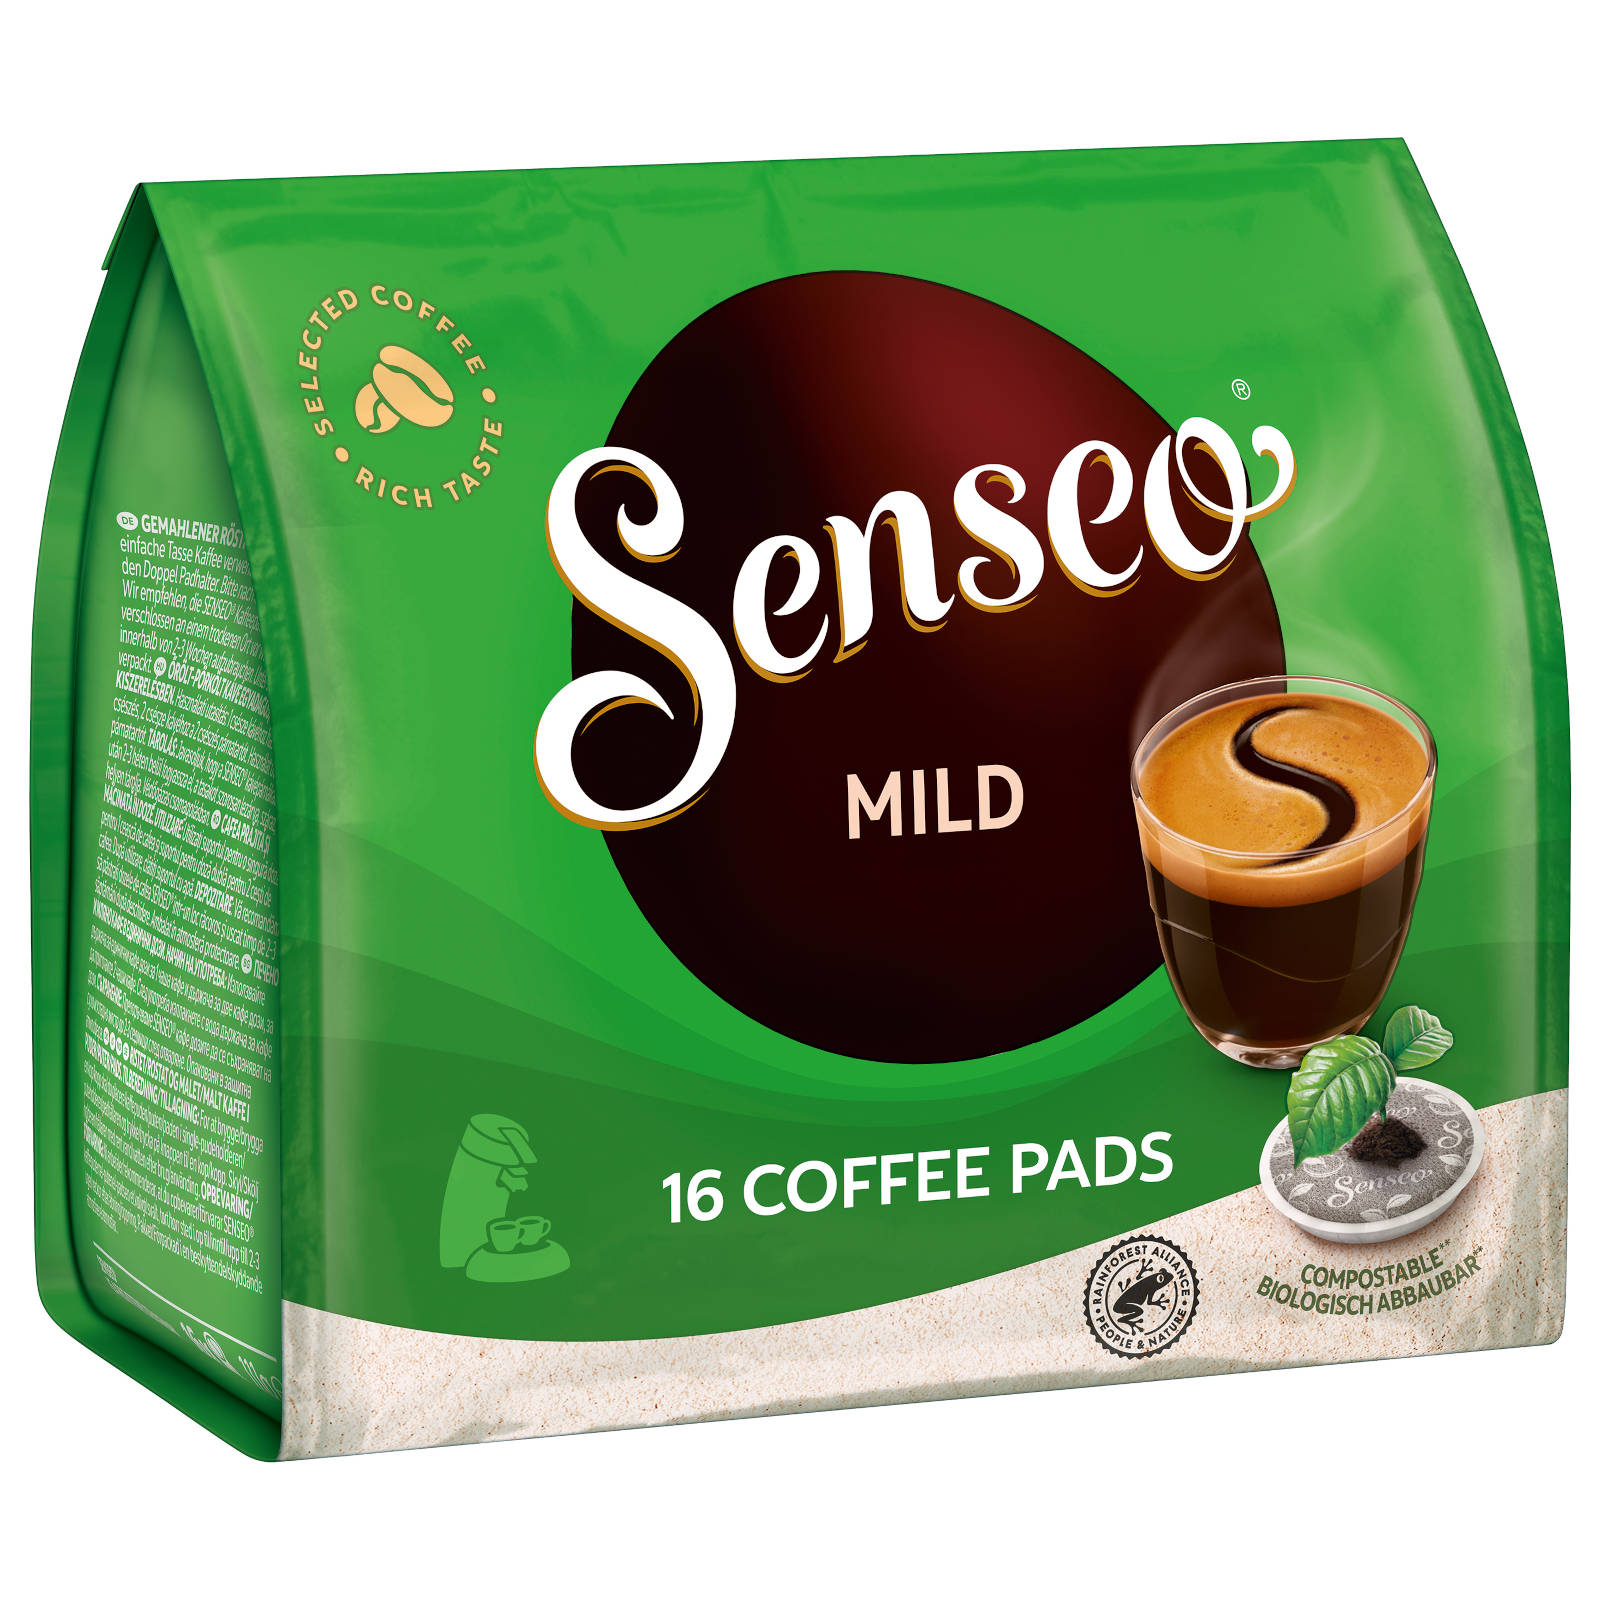 SENSEO Mild 10 16 Padmaschine) Kaffeepads (Senseo x Getränke